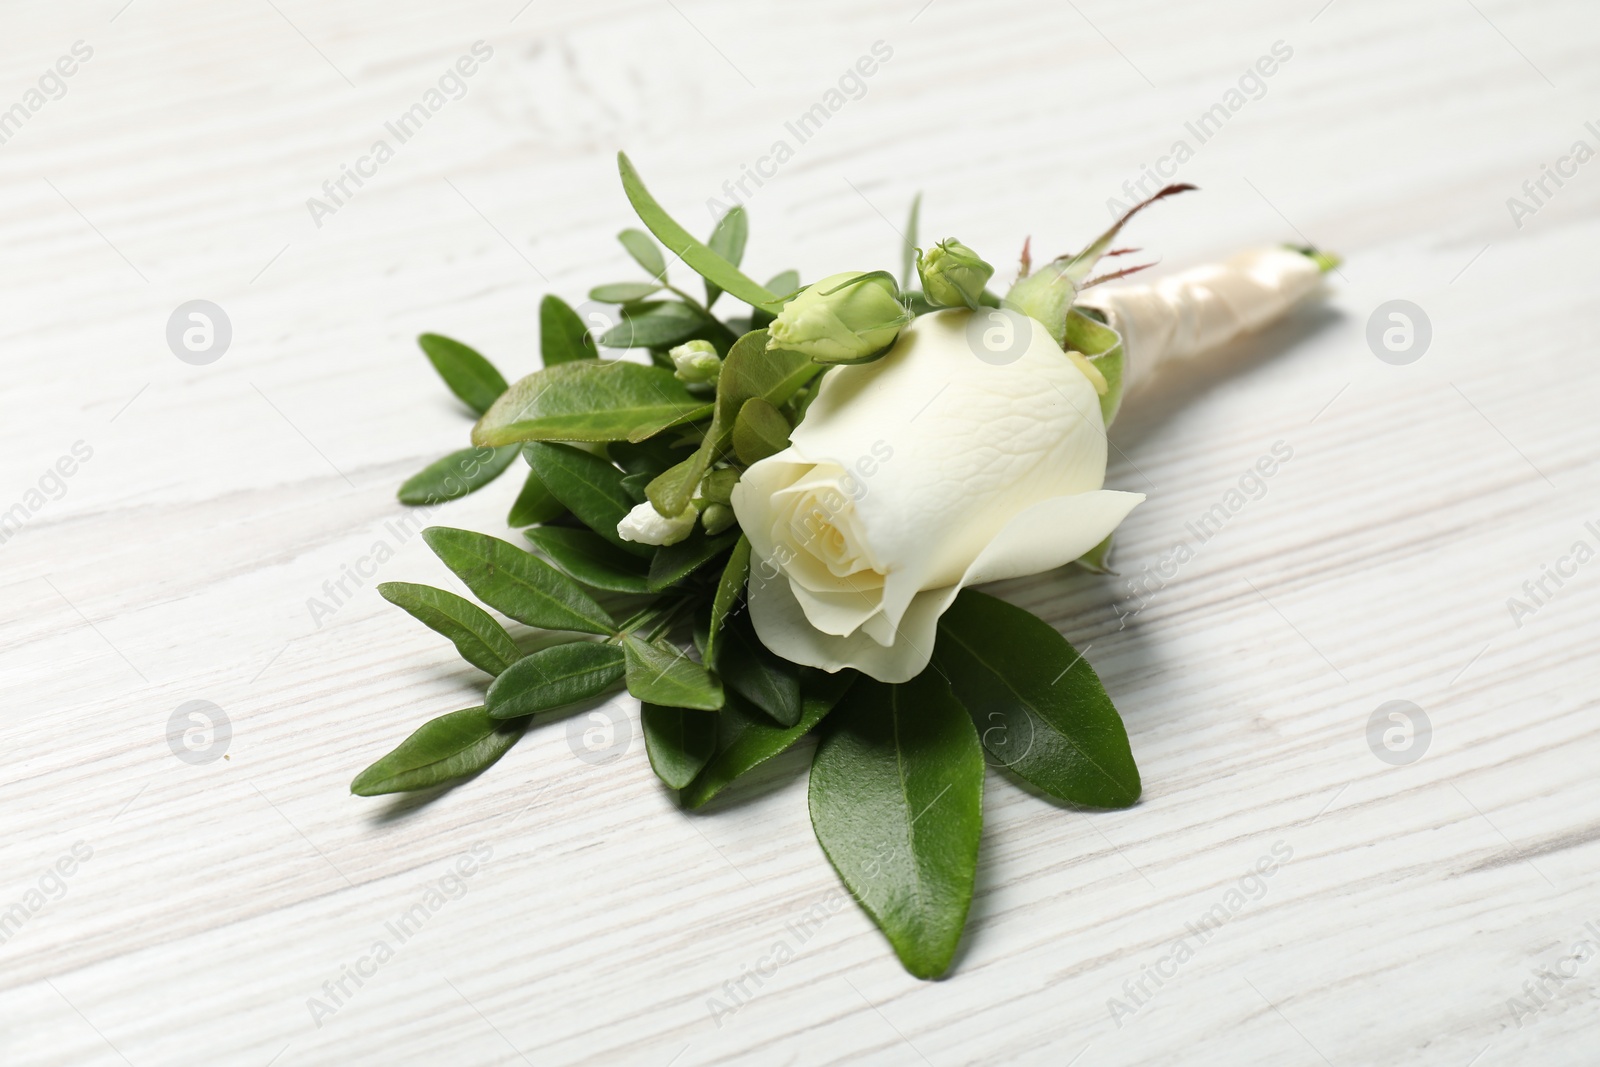 Photo of Wedding stuff. Stylish boutonniere on white wooden table, closeup